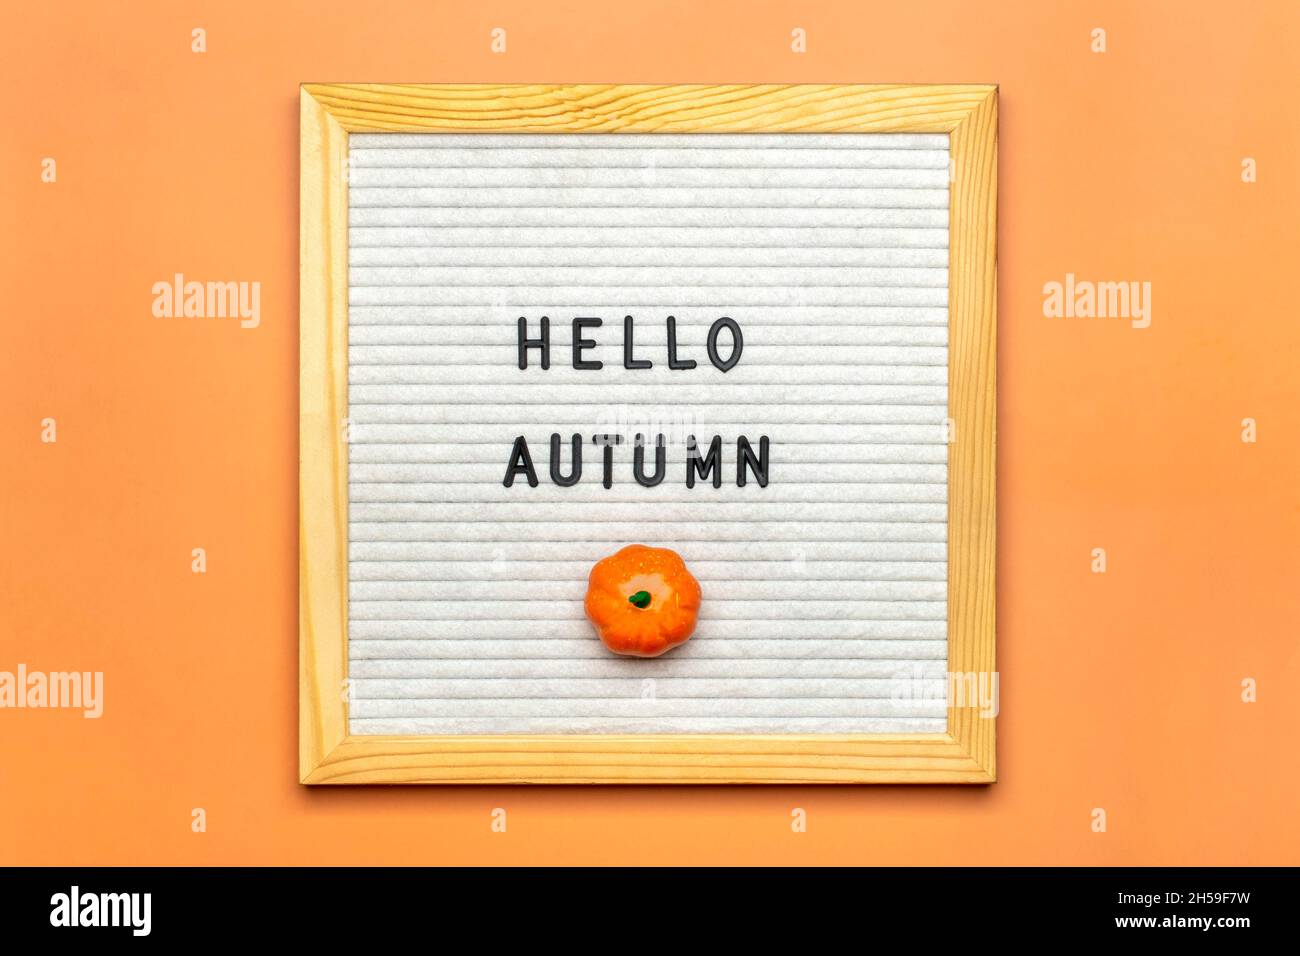 Sanglier avec texte Hello automnal, citrouille sur fond orange vue du dessus Flat Lay Seasonal concept Bonjour septembre, octobre, novembre Banque D'Images